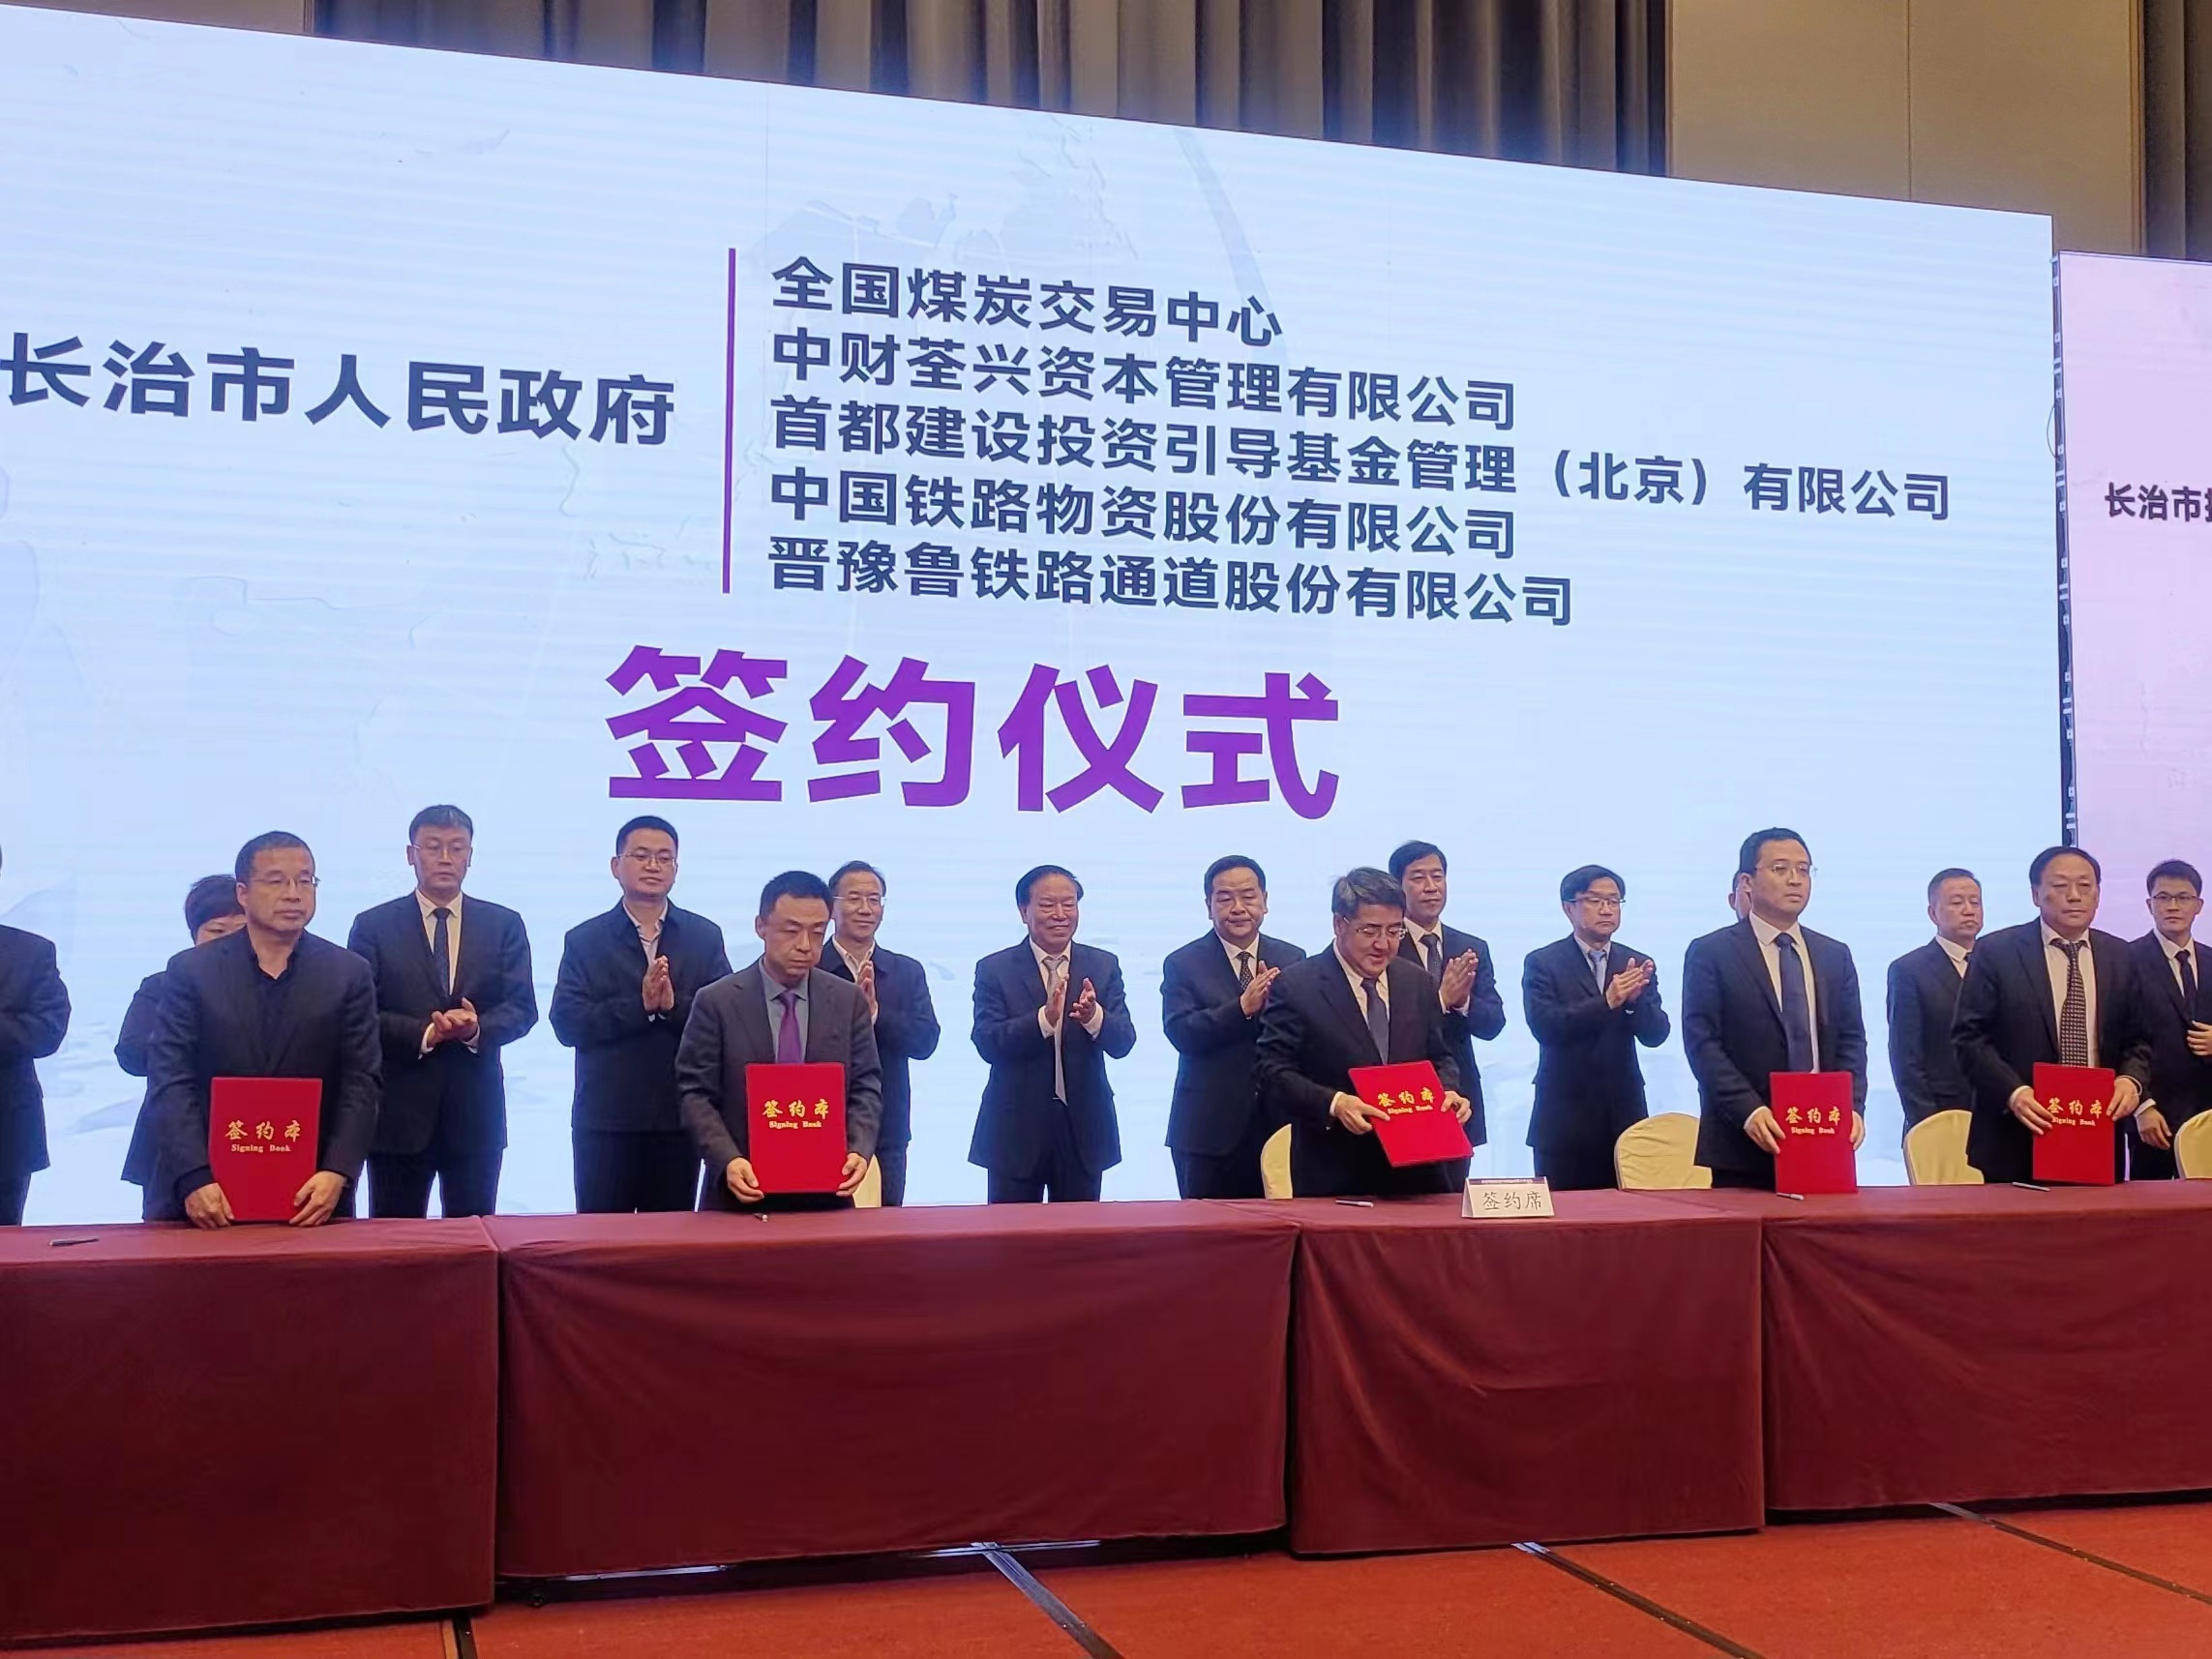 中国铁物与长治市人民政府签署战略合作框架协议